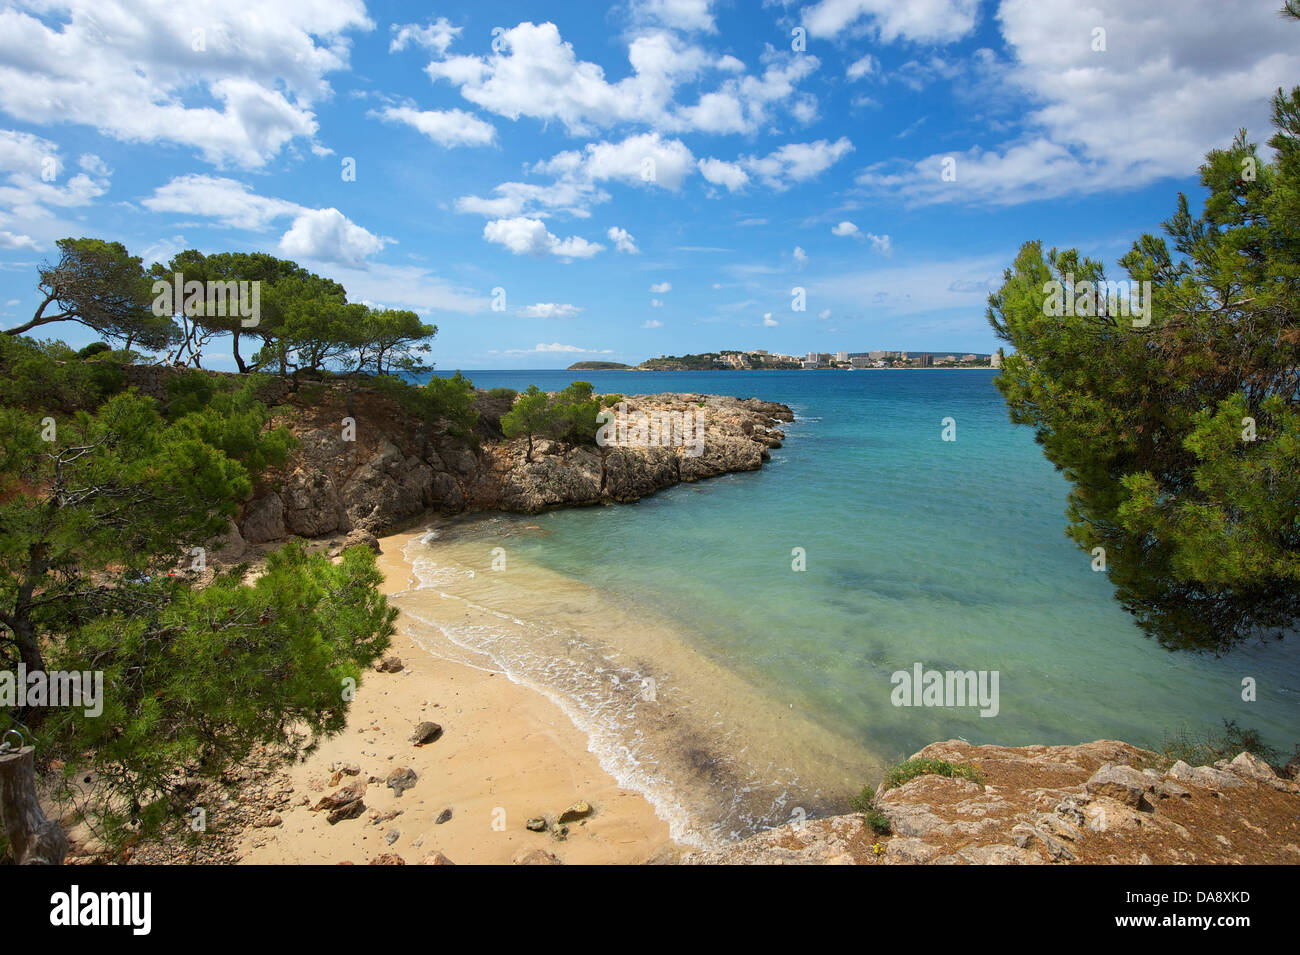 Isole Baleari, Maiorca, Mallorca, Spagna, Europa, esterno, la spiaggia di sabbia delle spiagge di sabbia, spiaggia, mare, spiagge, le spiagge, i COA Foto Stock